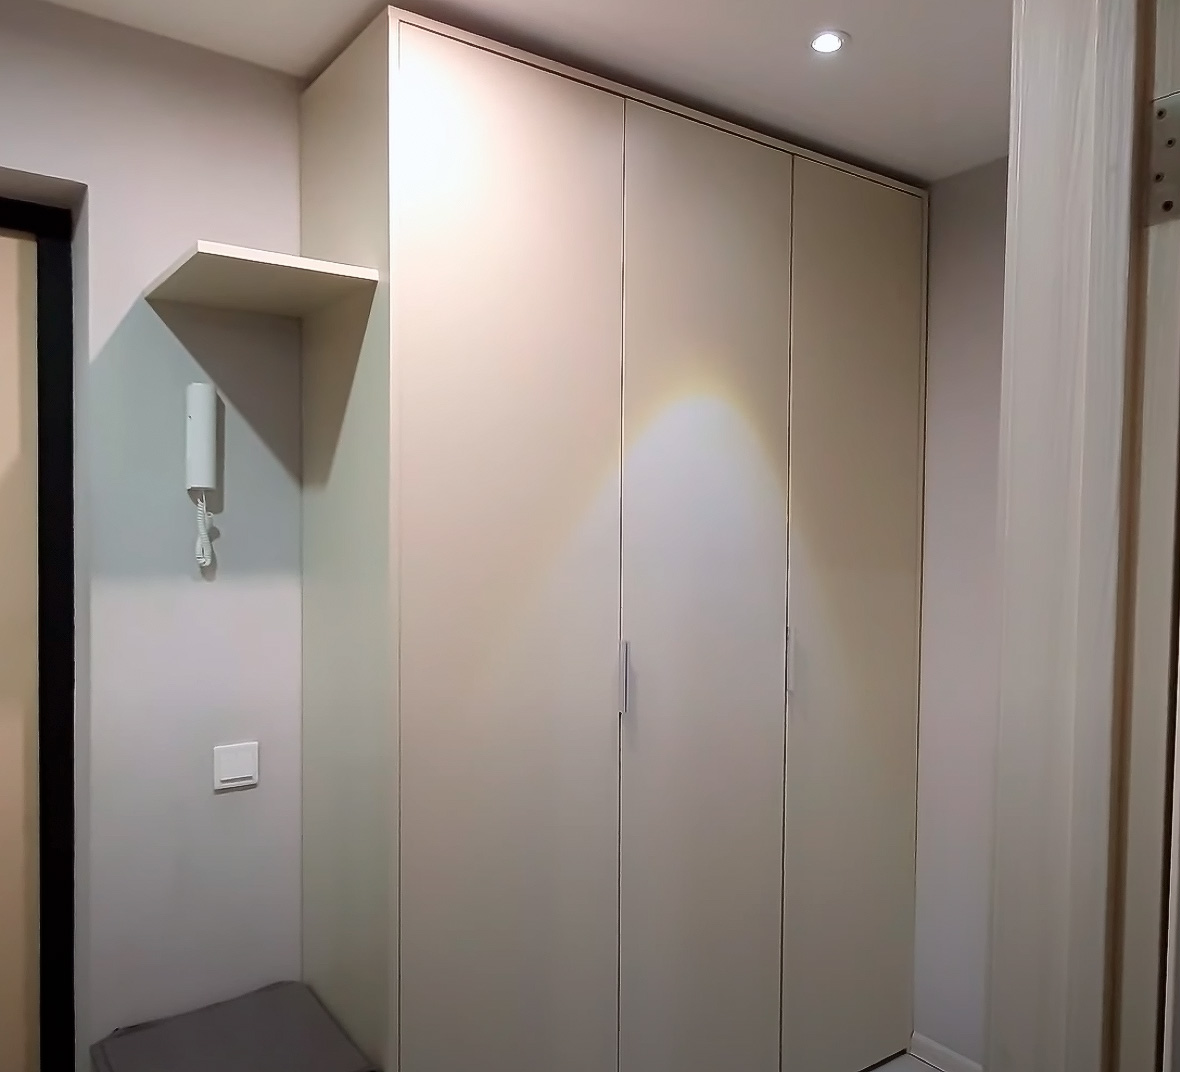 Как собрать распашной шкаф в коридор без опыта: пошаговая инструкция